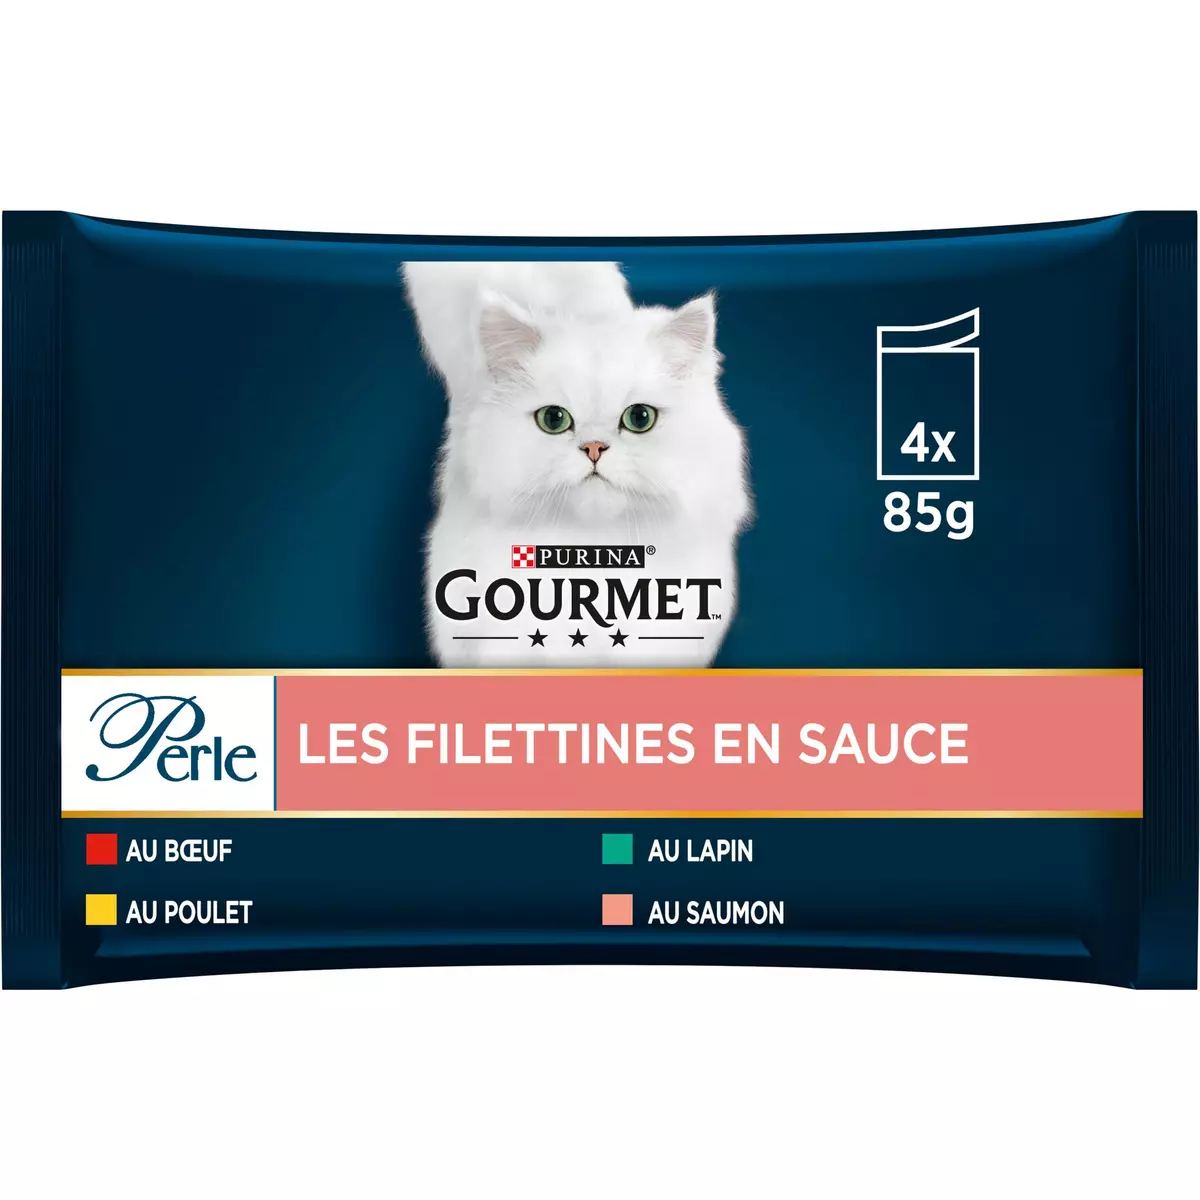 GOURMET Perle Les Filettines en sauce sachets repas pâtée en sauce viandes poissons pour chat 4x85g